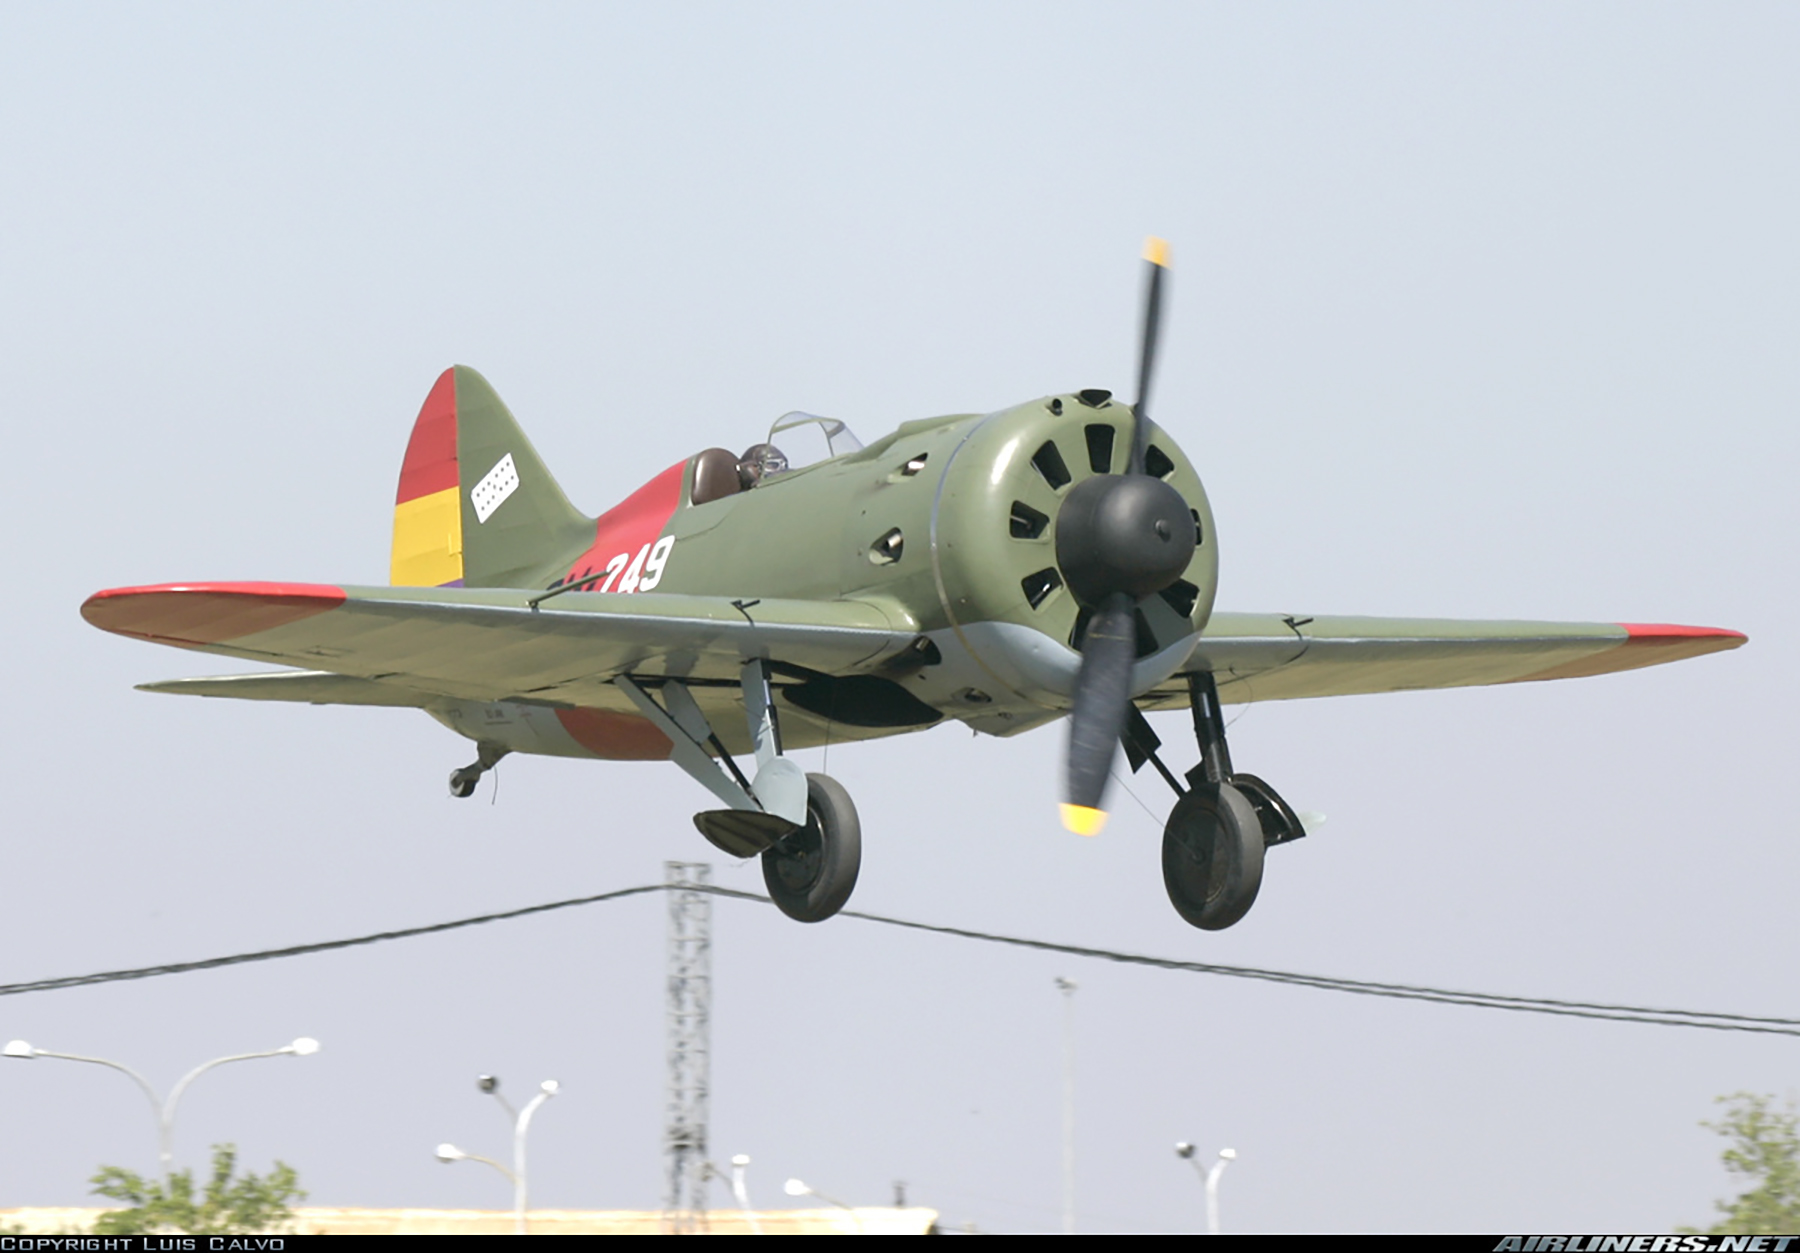 Airworthy Polikarpov I 16 type 24 cn 2421039 flying as Spanish Republican AF CM249 SCW 05